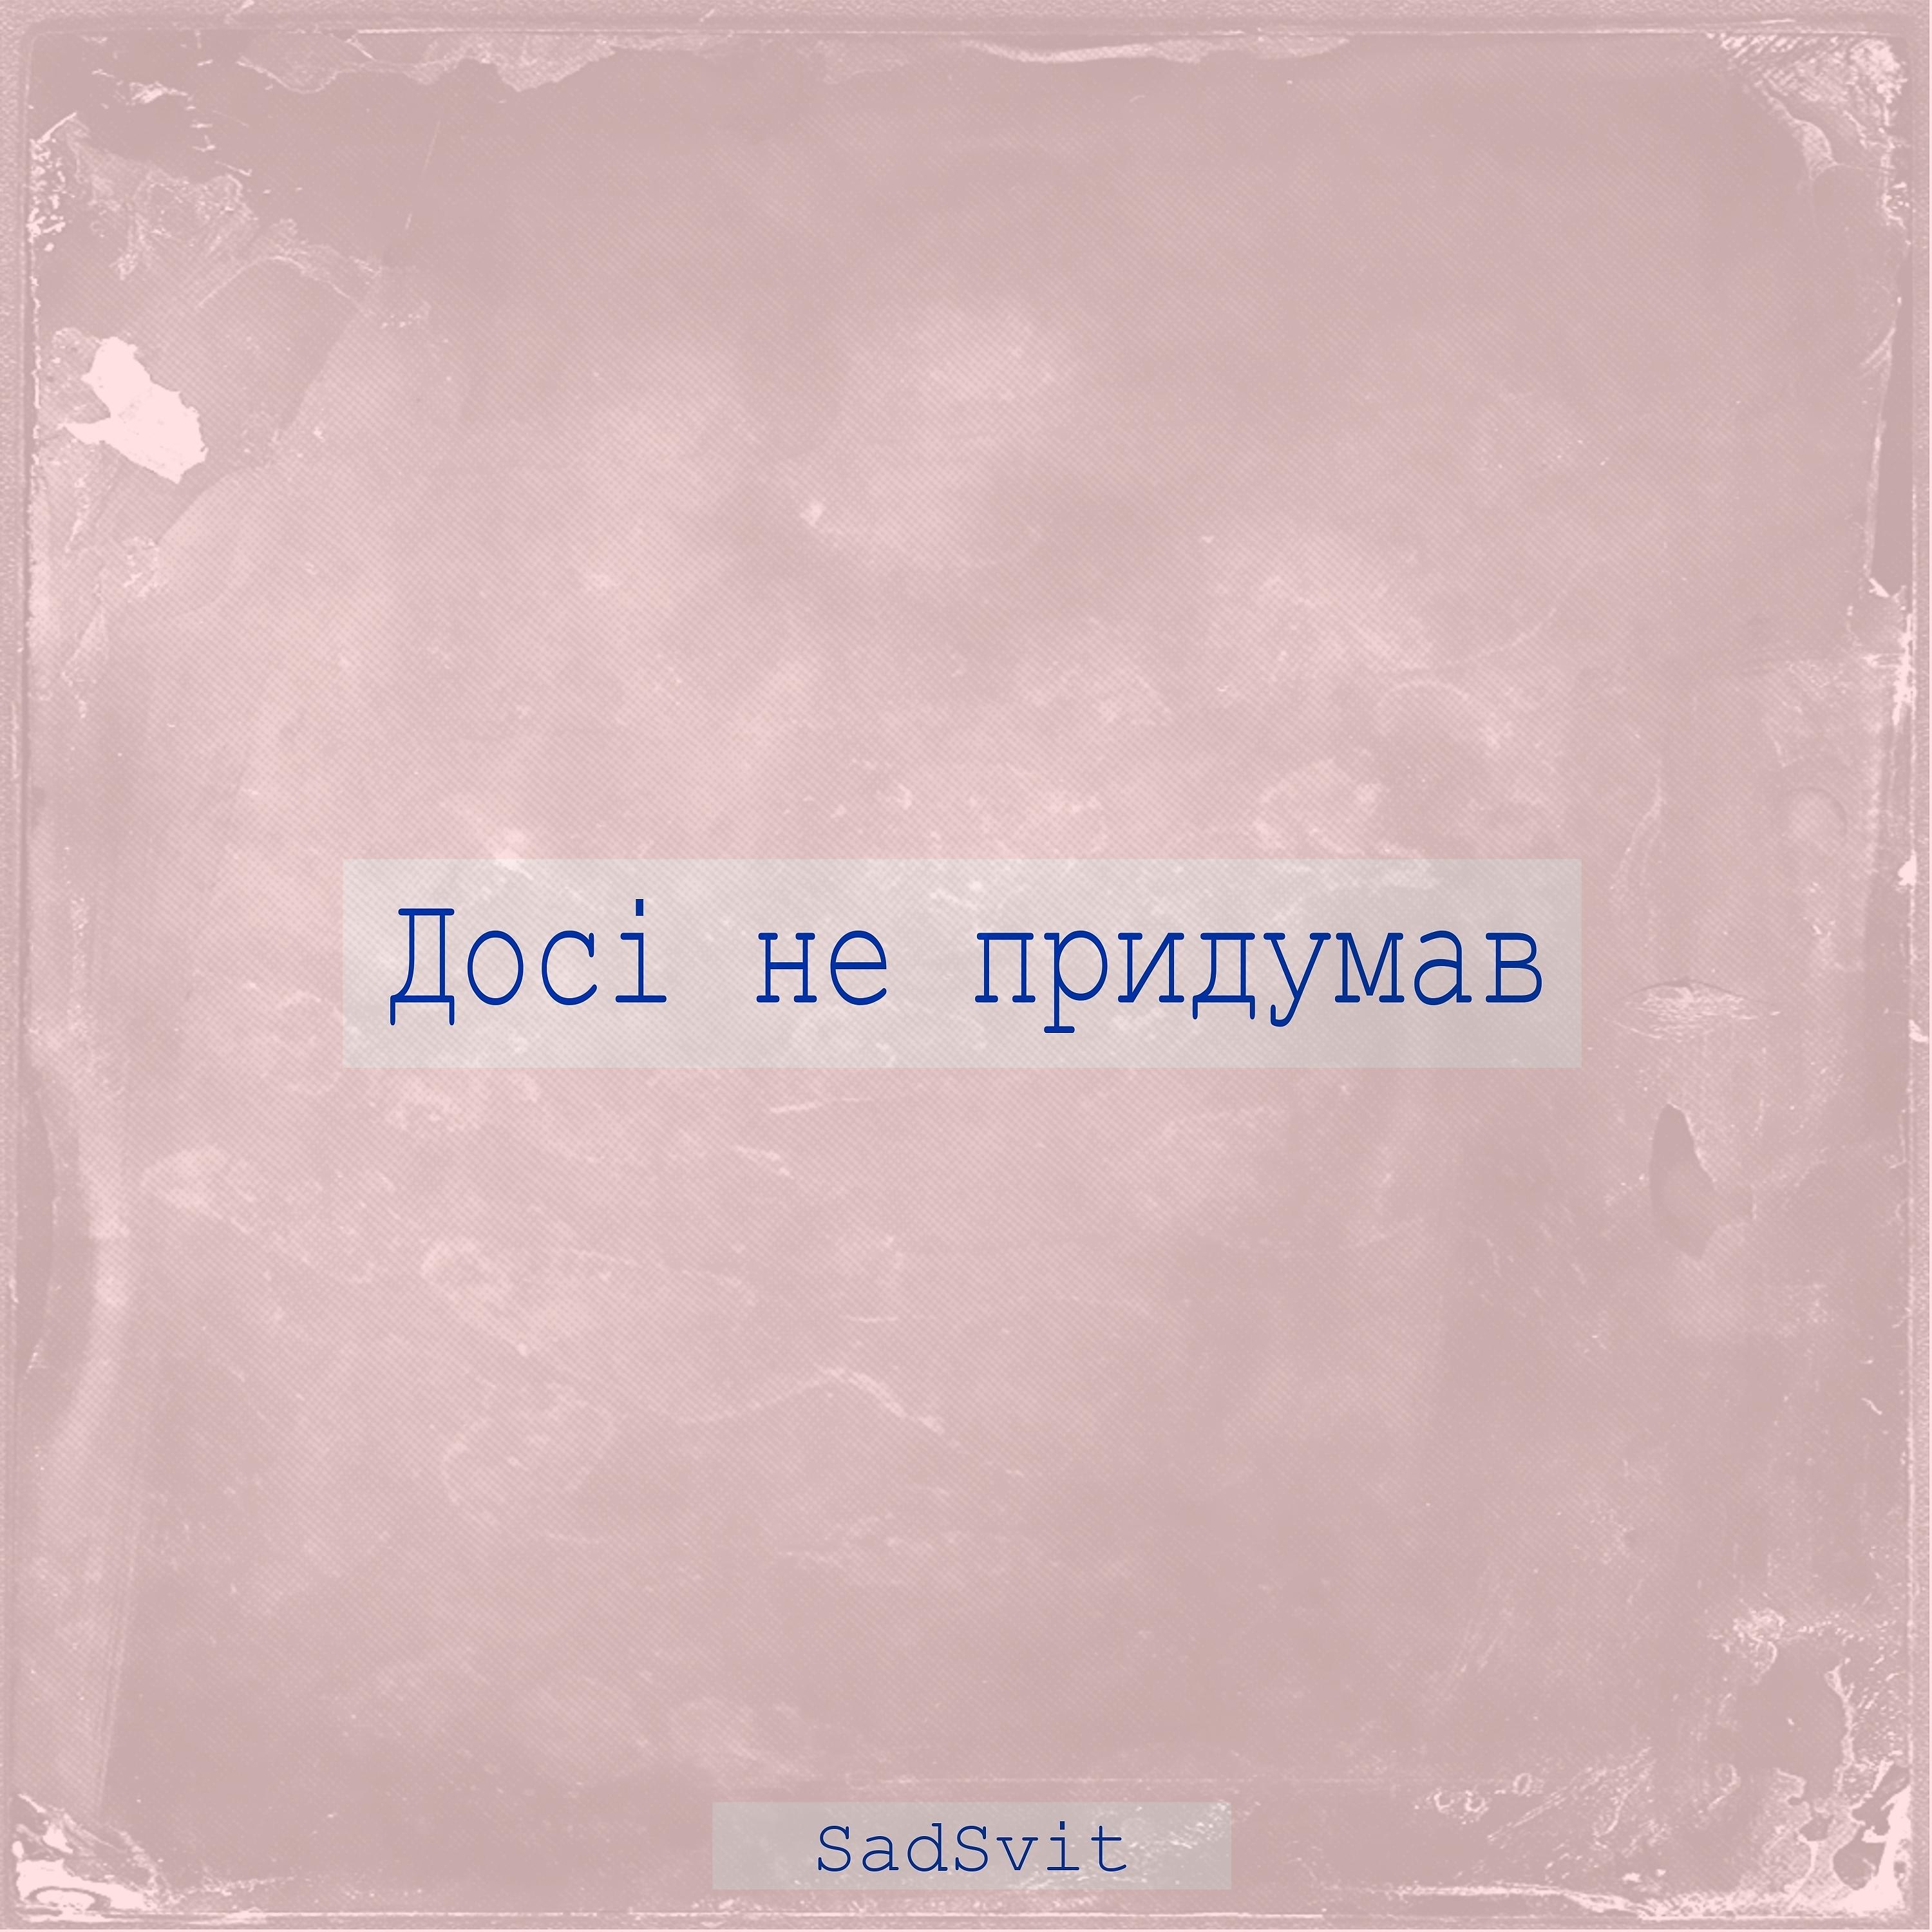 Песня силуэте sadsvit. SADSVIT альбом. SADSVIT небо. Сенс SADSVIT. Досі не придумав SADSVIT текст.